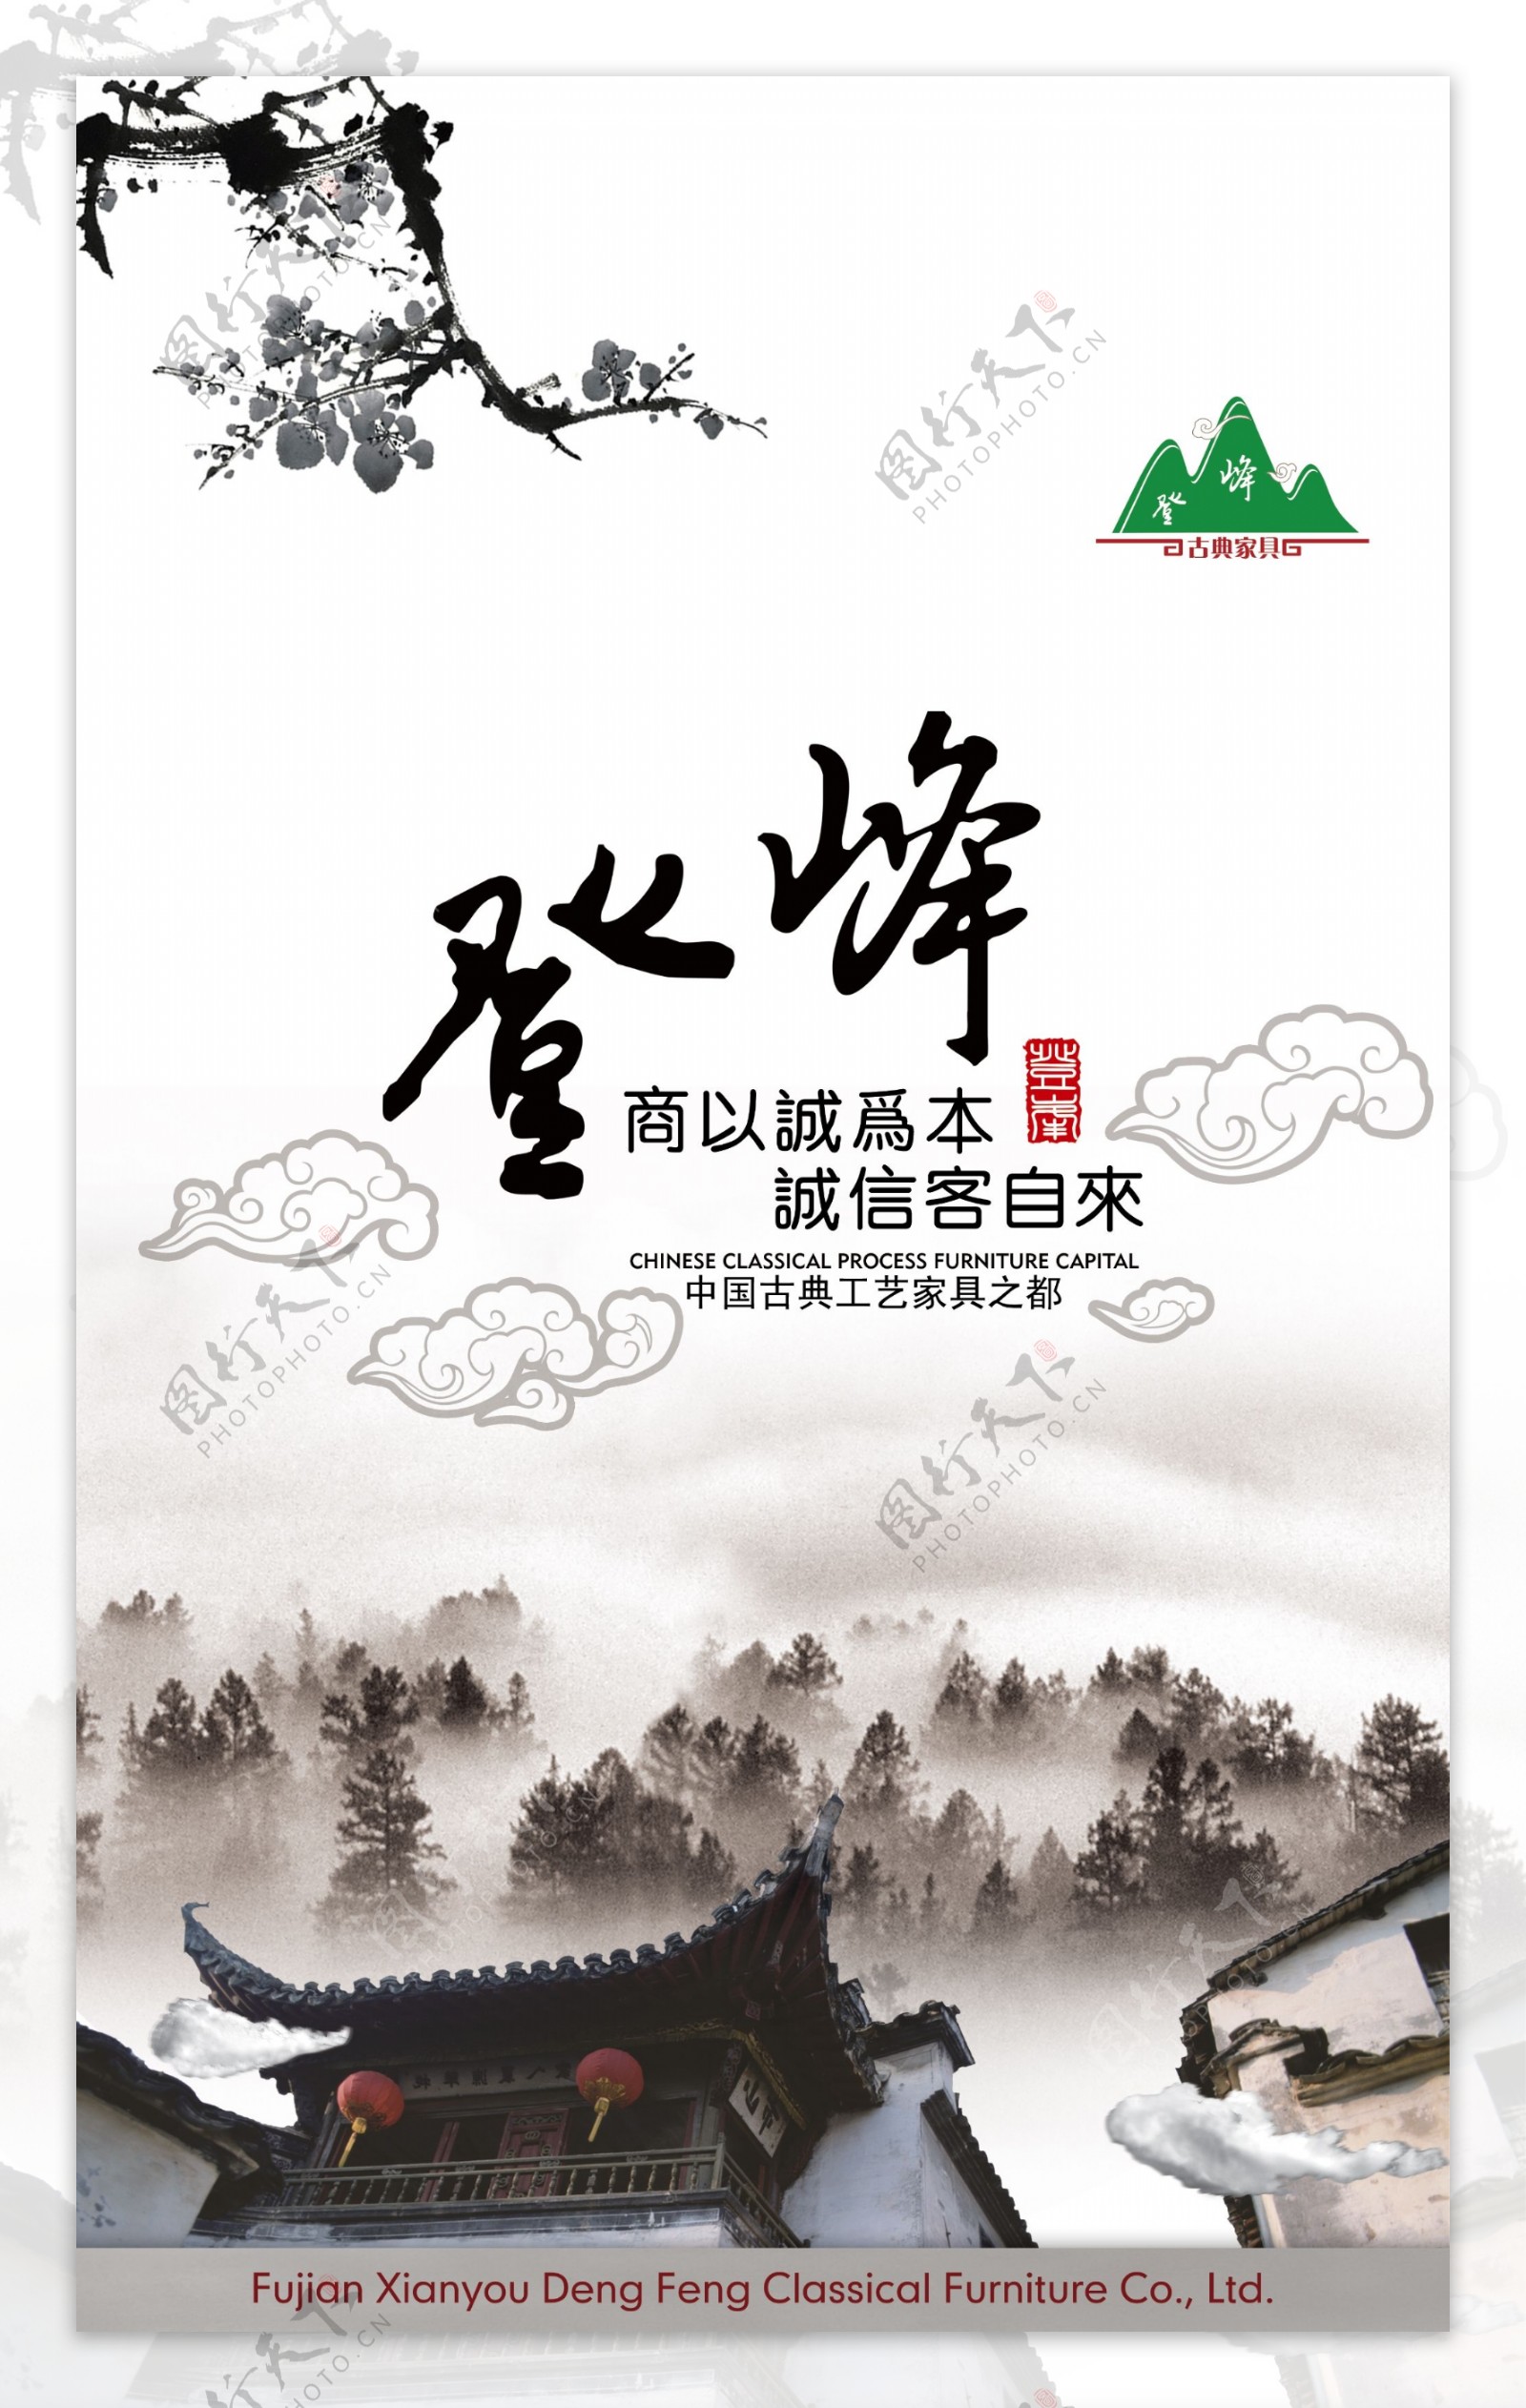 简约中国风大气海报